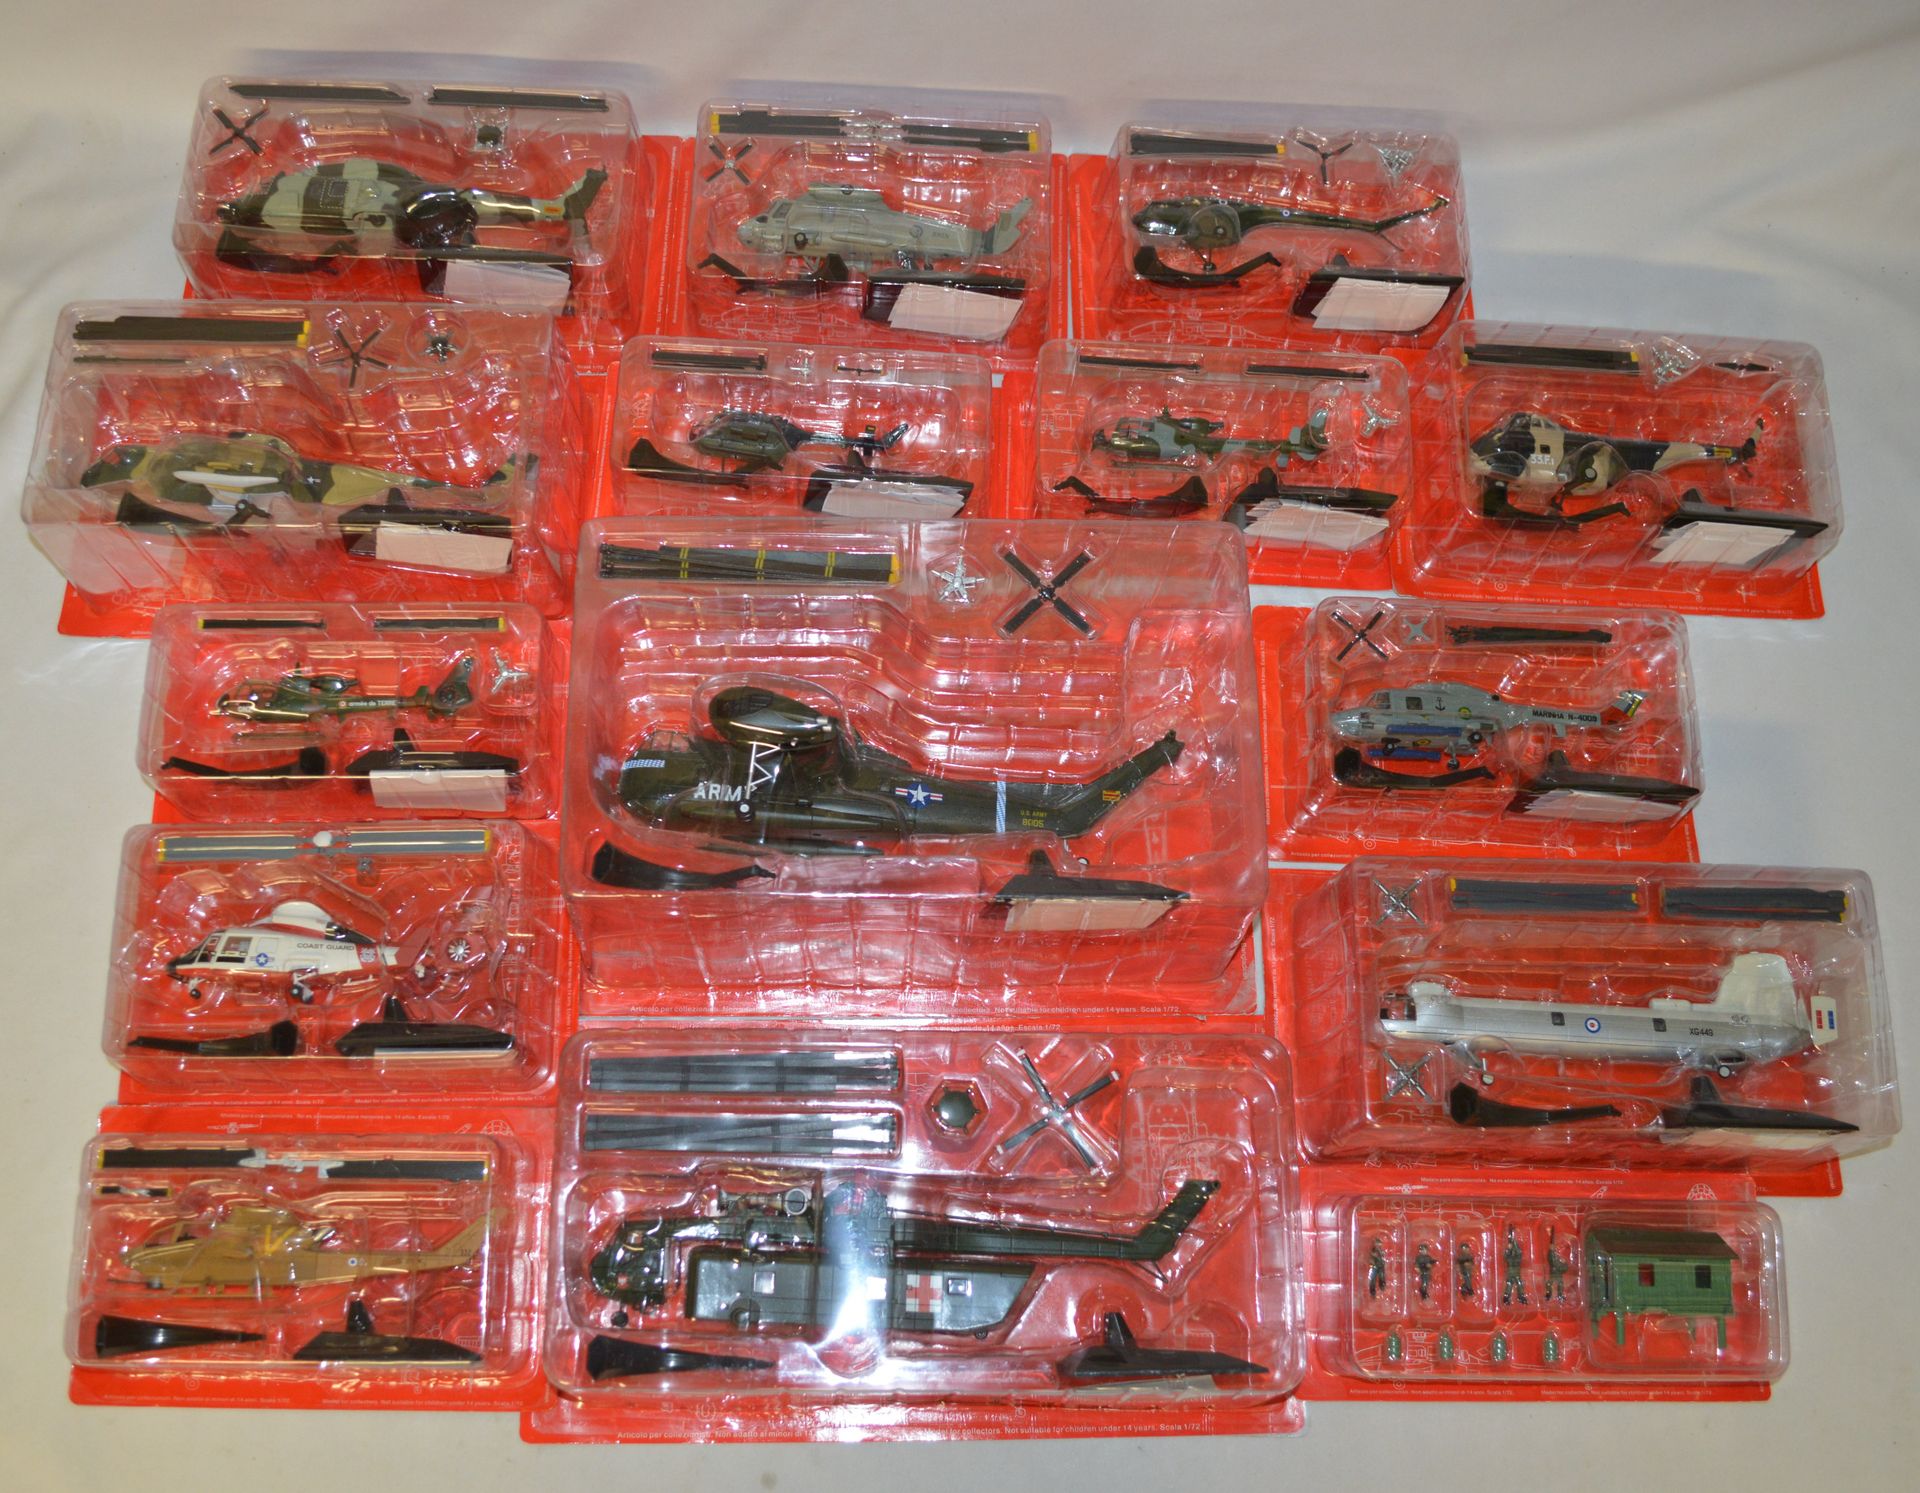 Null 阿尔塔亚。战斗直升机系列。需要组装的模型。一套15个模型。原装盒。出处：一位大收藏家的遗产。第四部分